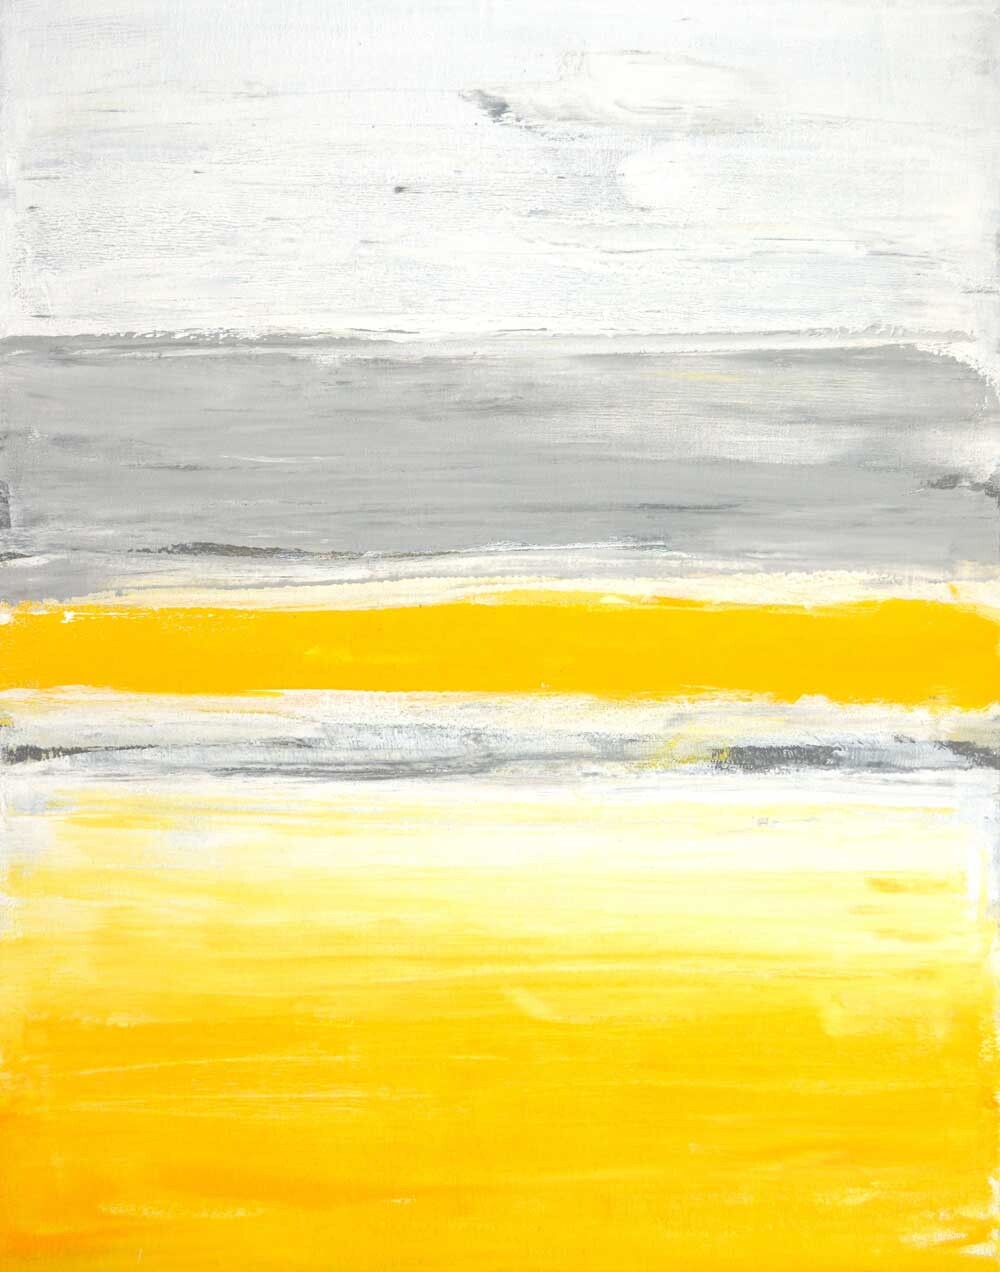 キャンバスパネル Art Panel T30 Galler Grey and Yellow Abstract Art Painting iap-51598 送料無料